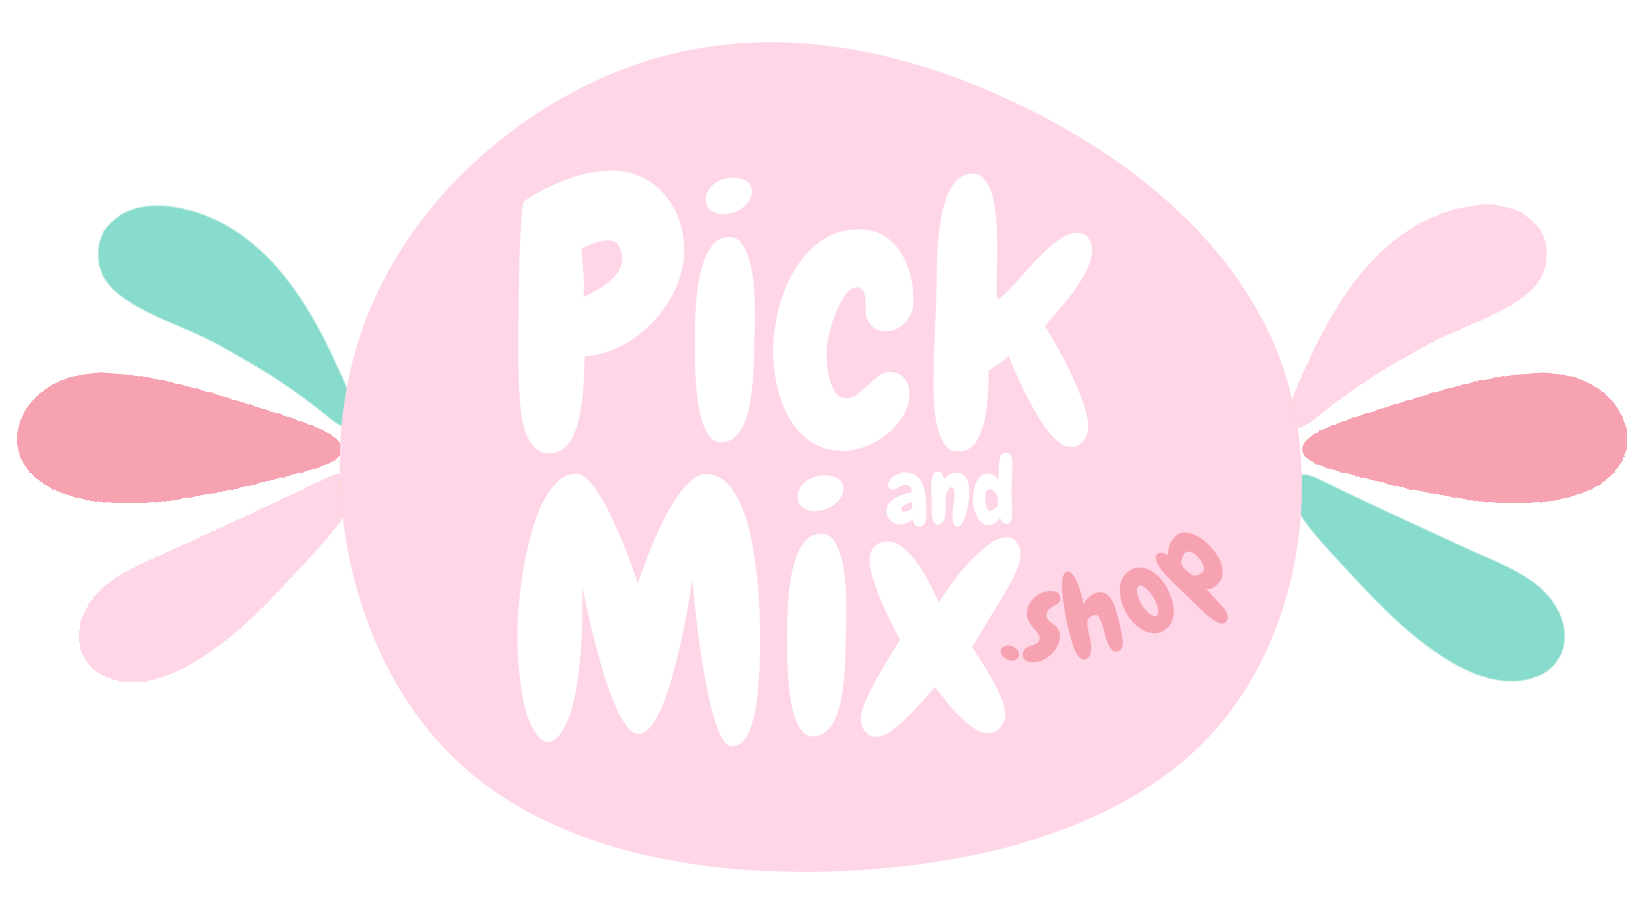 PickandMix.shop